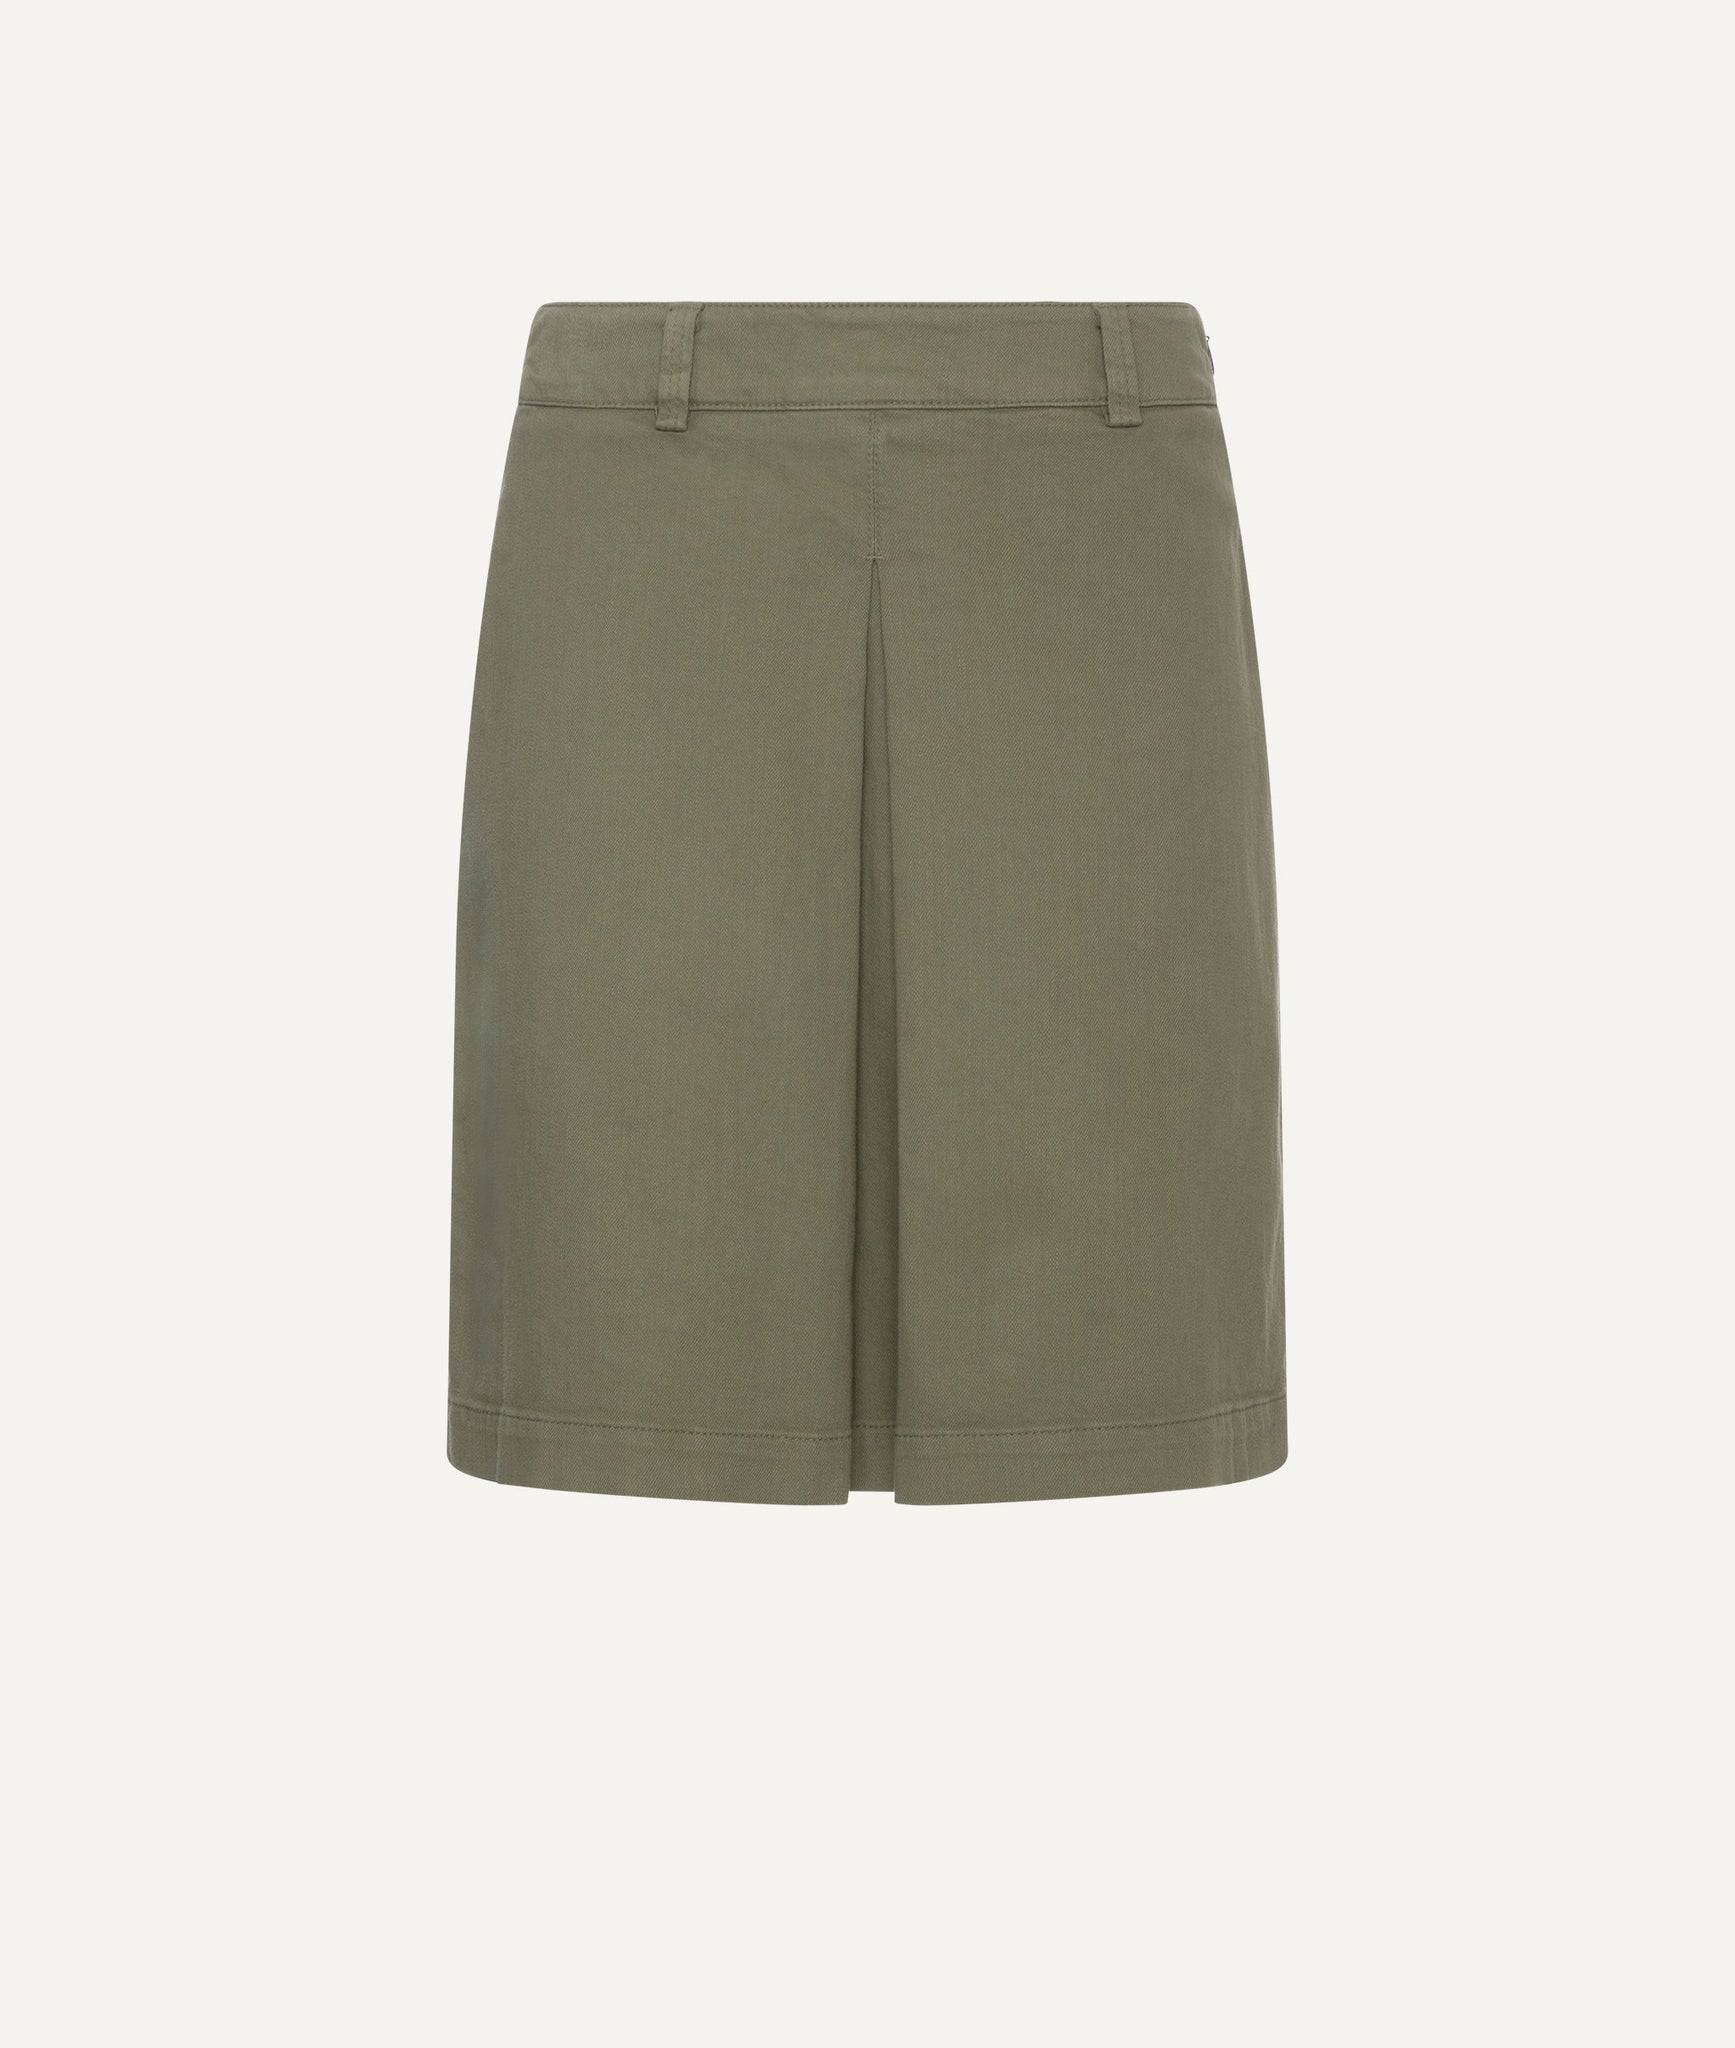 Peserico - Short Skirt in Cotton